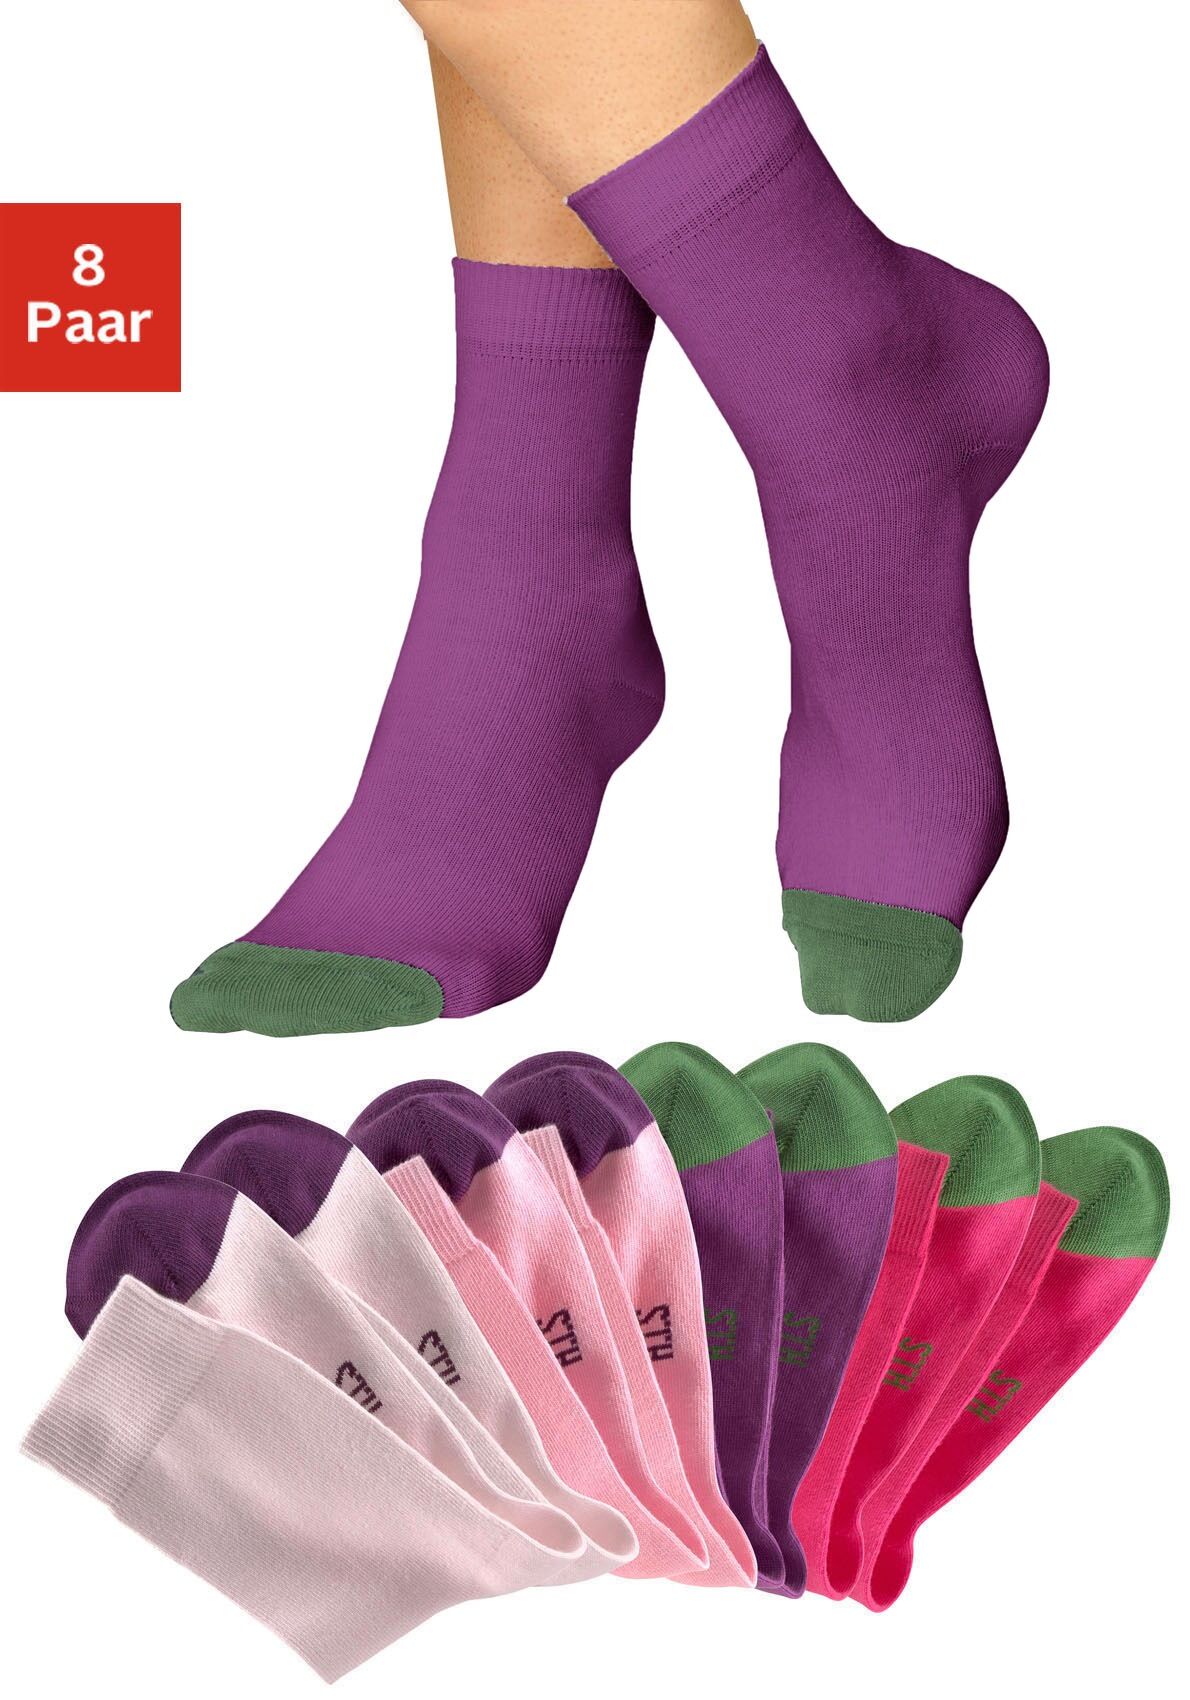 H.I.S Socken, (8 Paar), mit kontrastfarbener Spitze Floral Pink Größe 19-22 23-26 27-30 31-34 35-38 39-42